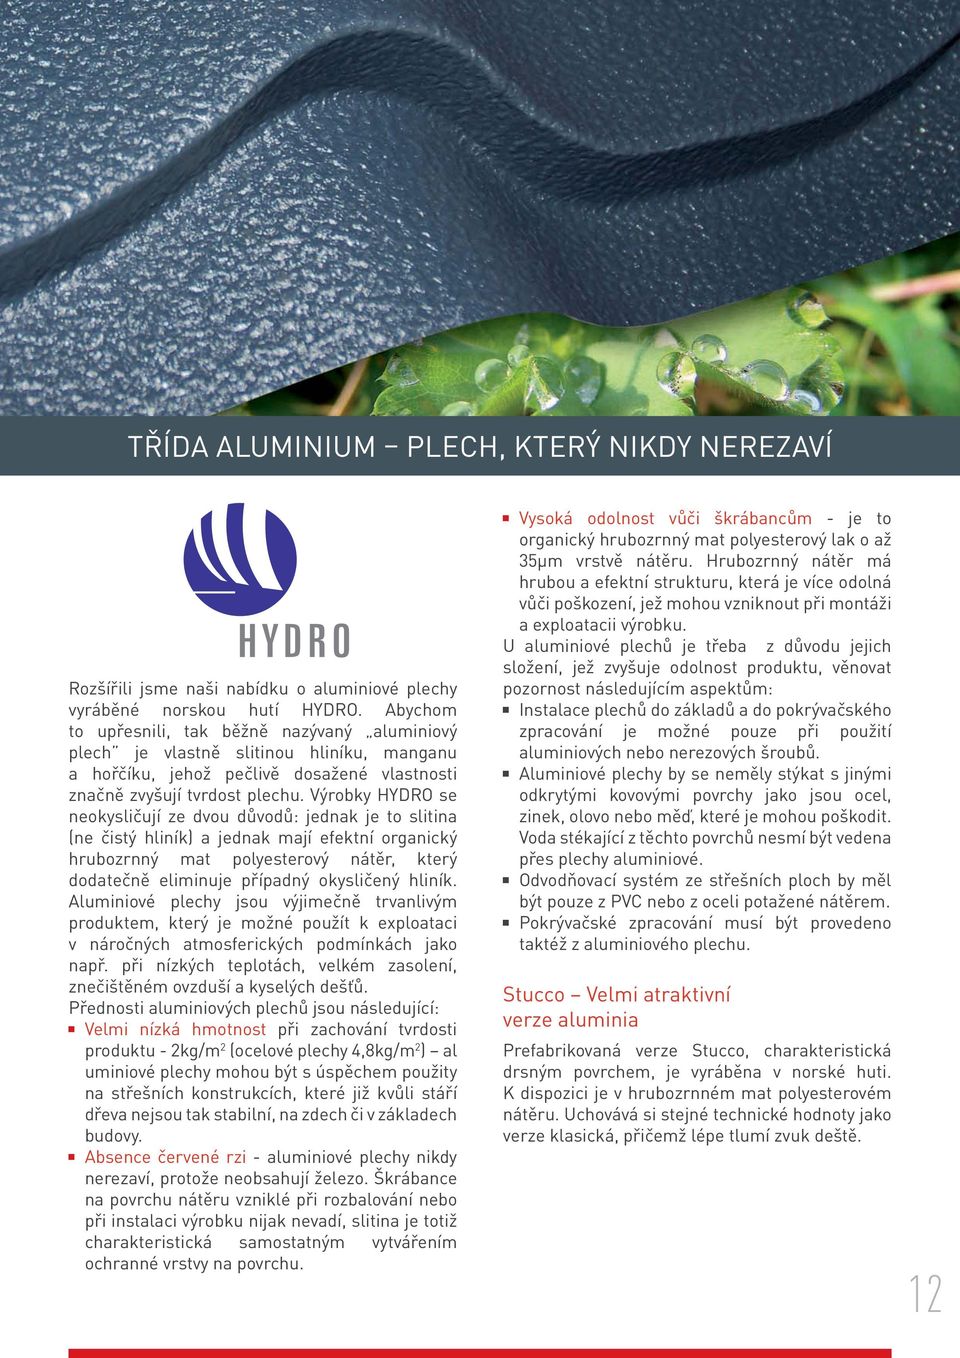 Výrobky HYDRO se neokysličují ze dvou důvodů: jednak je to slitina (ne čistý hliník) a jednak mají efektní organický hrubozrnný mat polyesterový nátěr, který dodatečně eliminuje případný okysličený